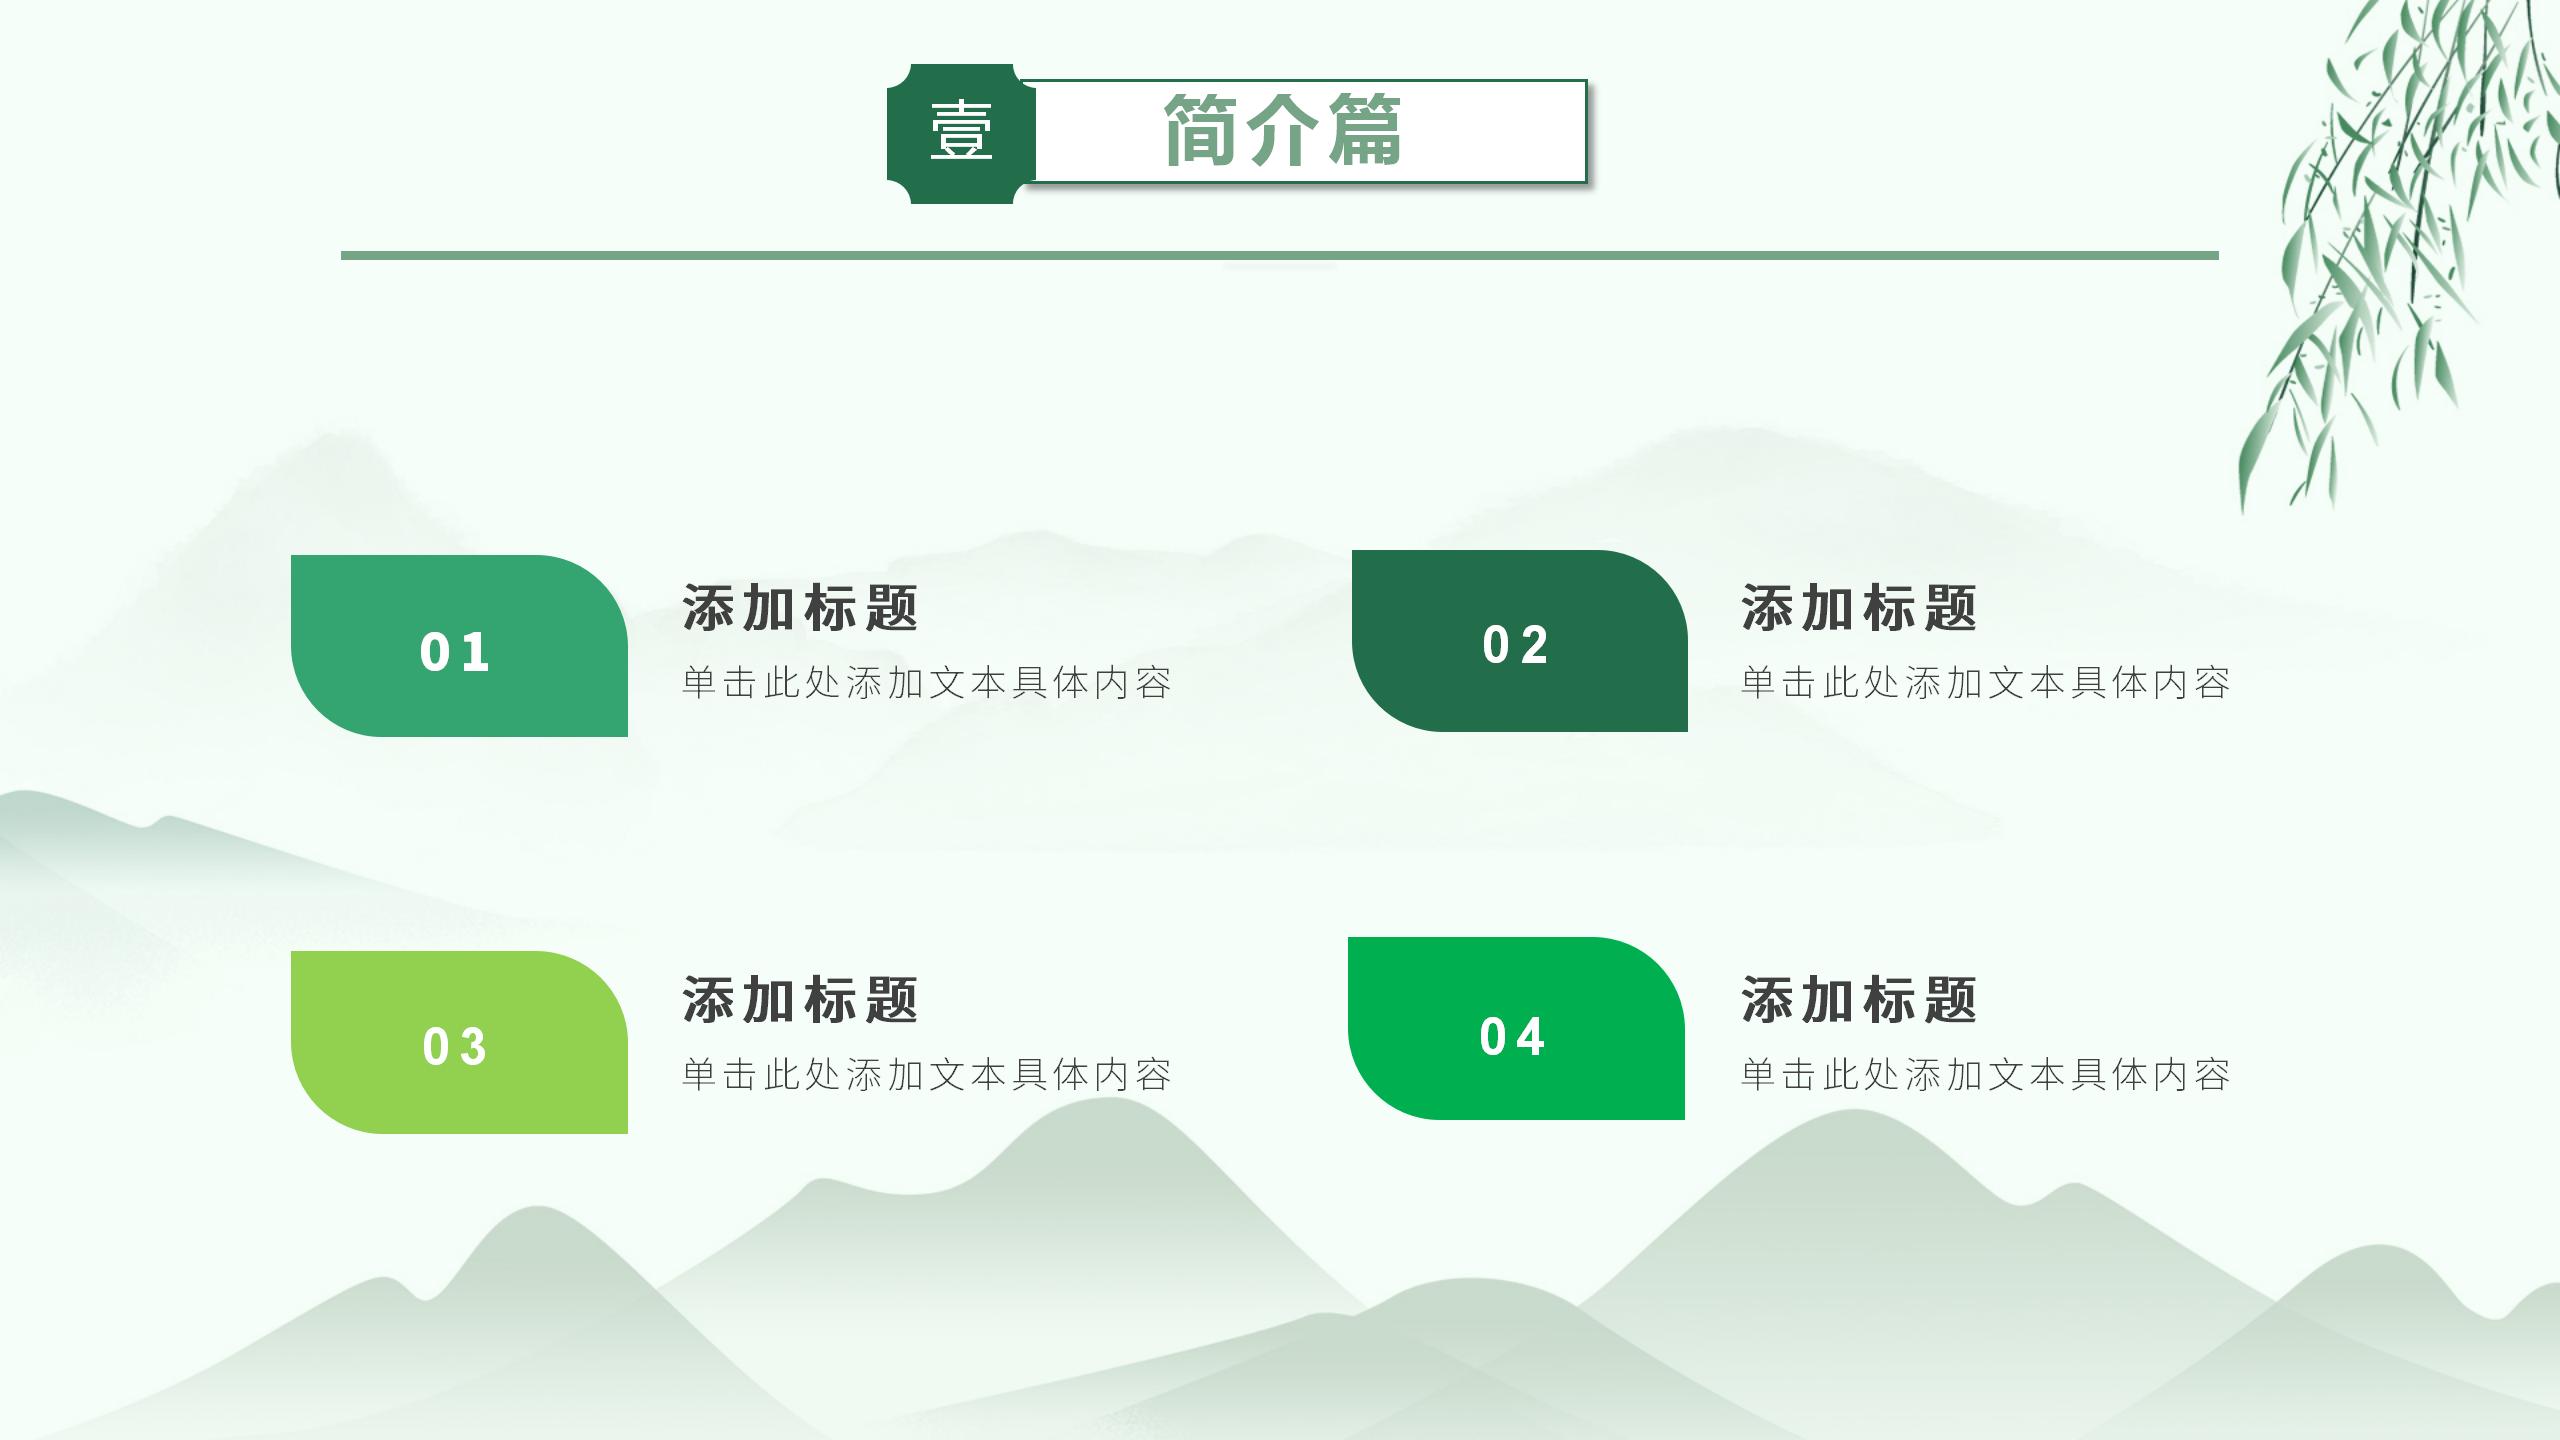 清新中國風卡通端午節主題班會活動策劃節日介紹PPT模板